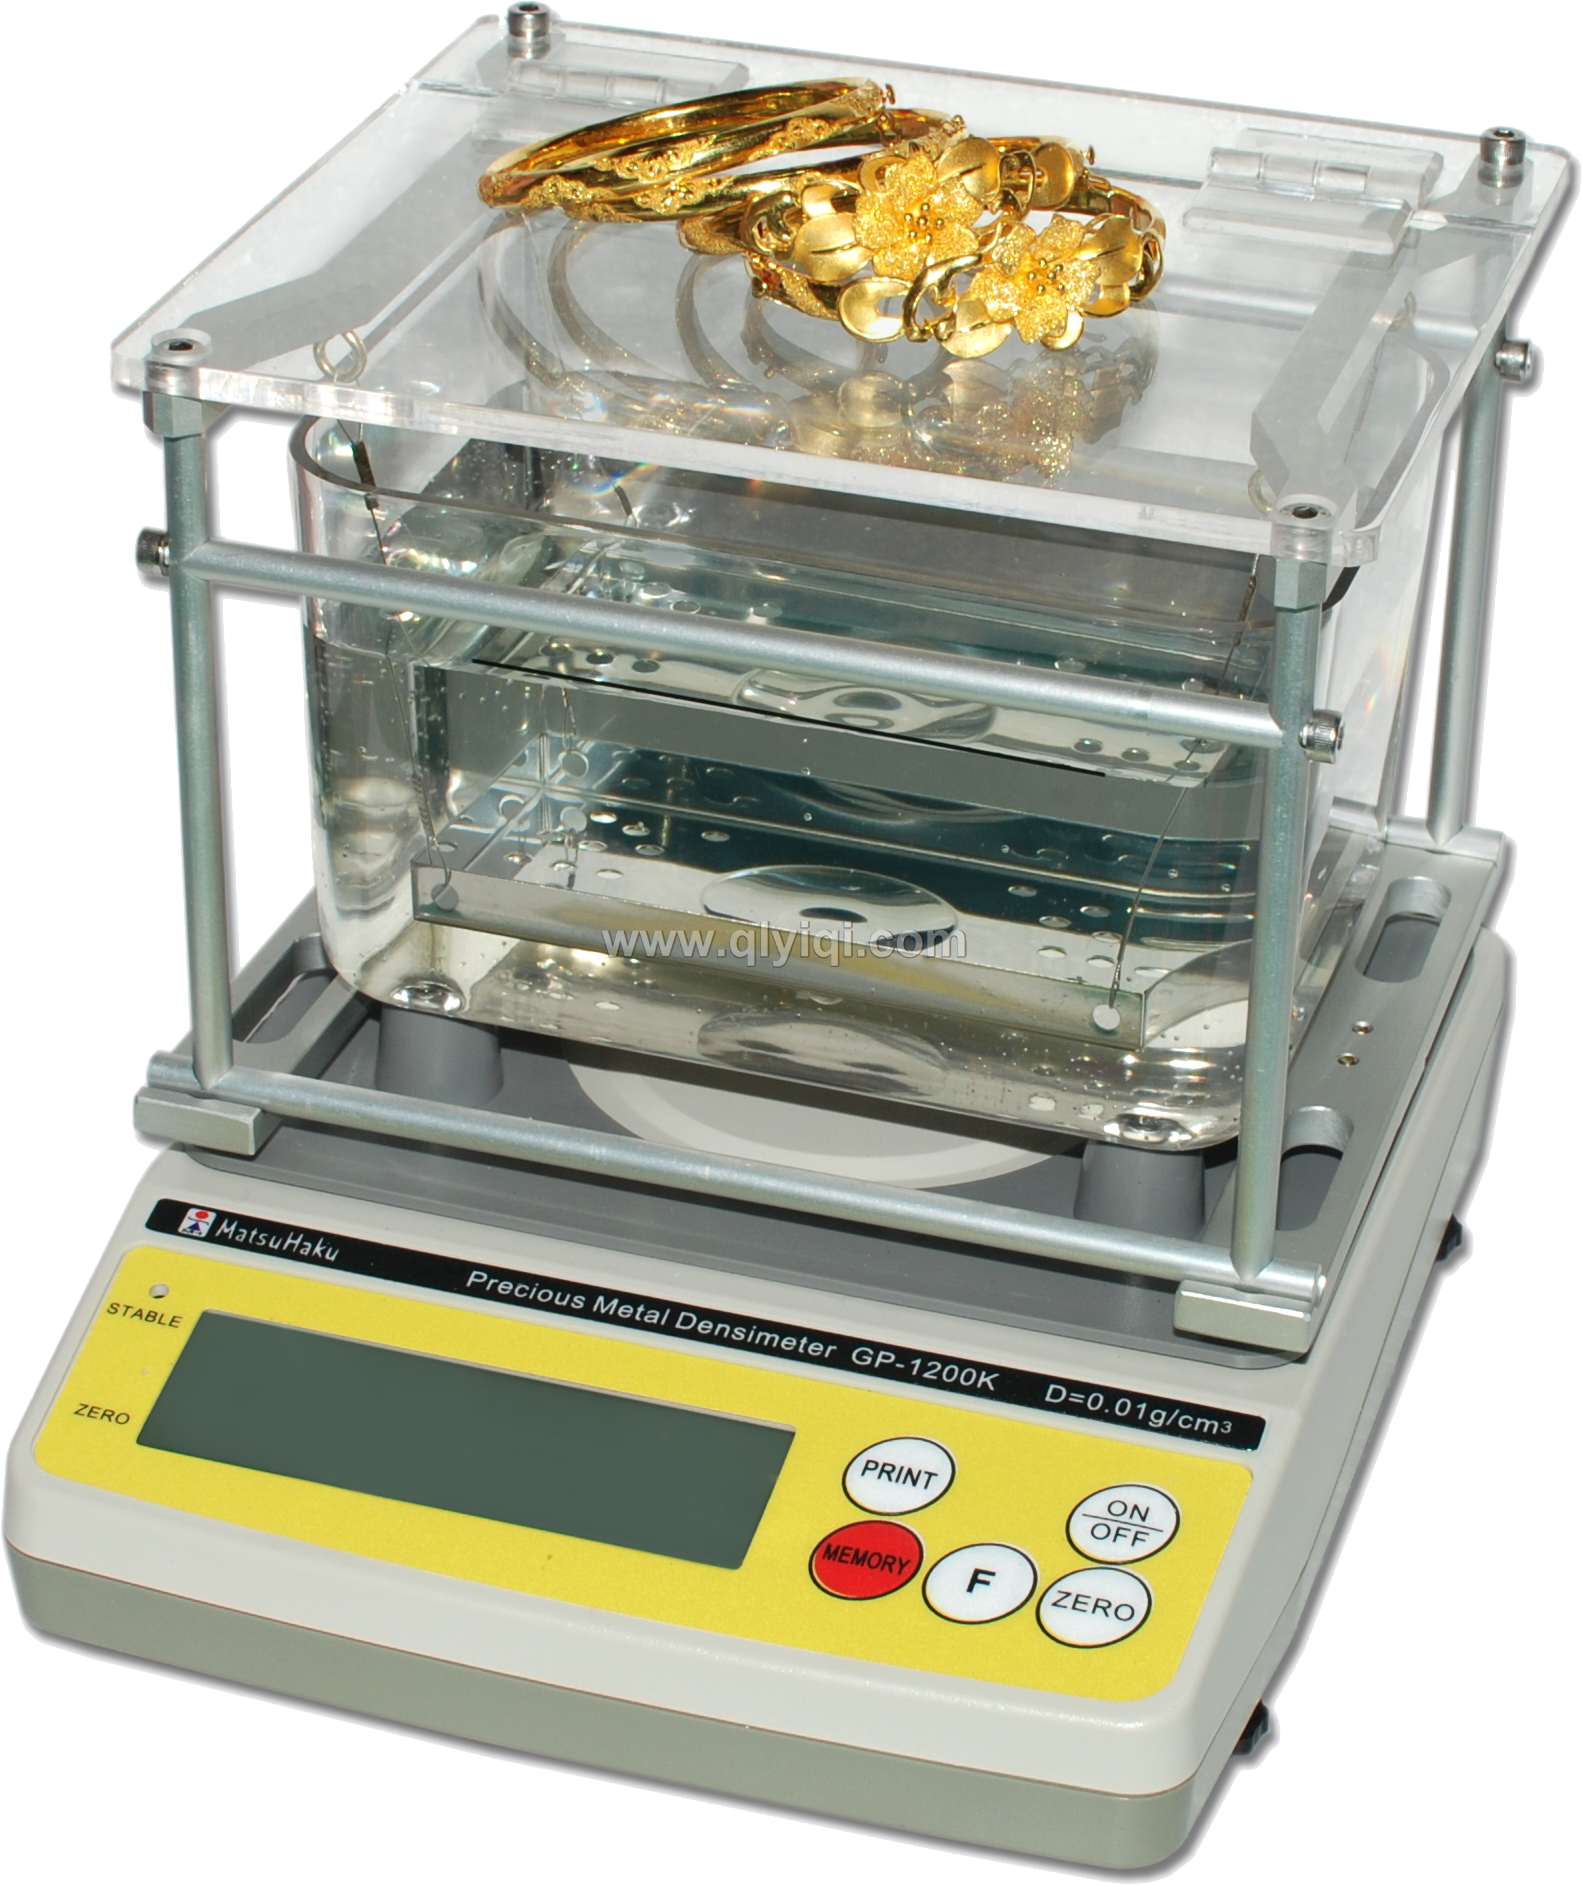 黄金纯度、密度、K数测试仪  GP-1200KN,